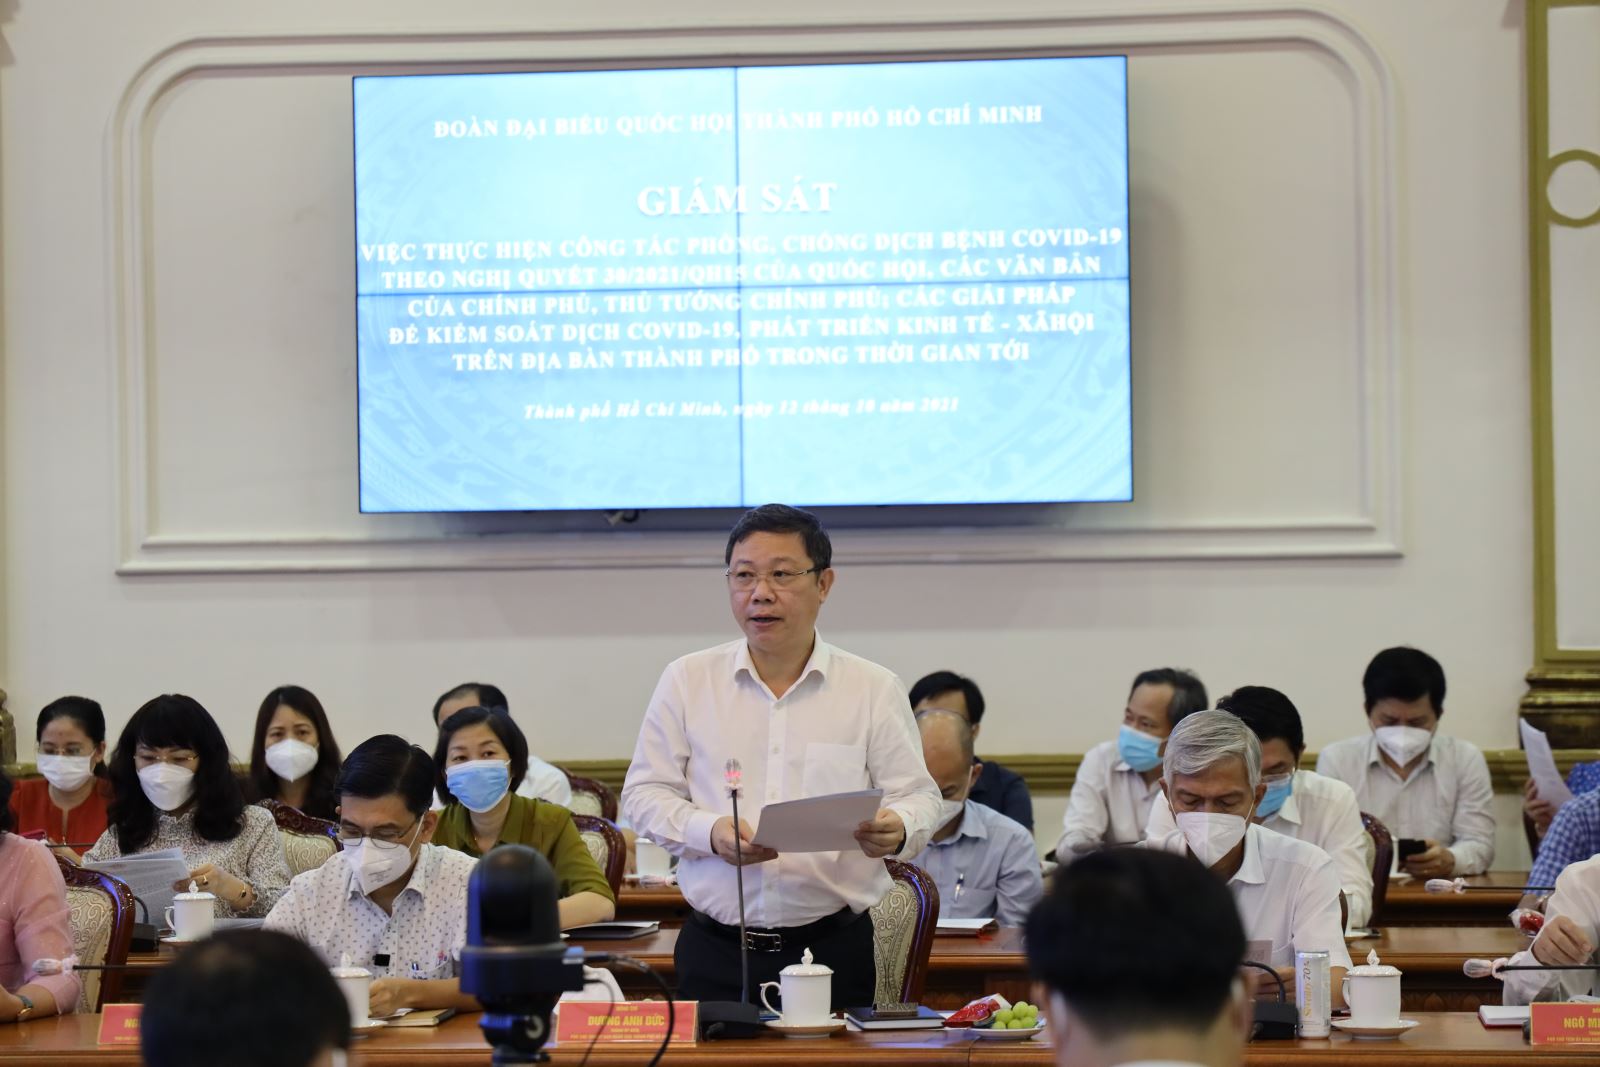 Phó Chủ tịch UBND TP. Hồ Chí Minh Dương Anh Đức báo cáo tình hình phòng, chống dịch bệnh trên địa bàn thành phố